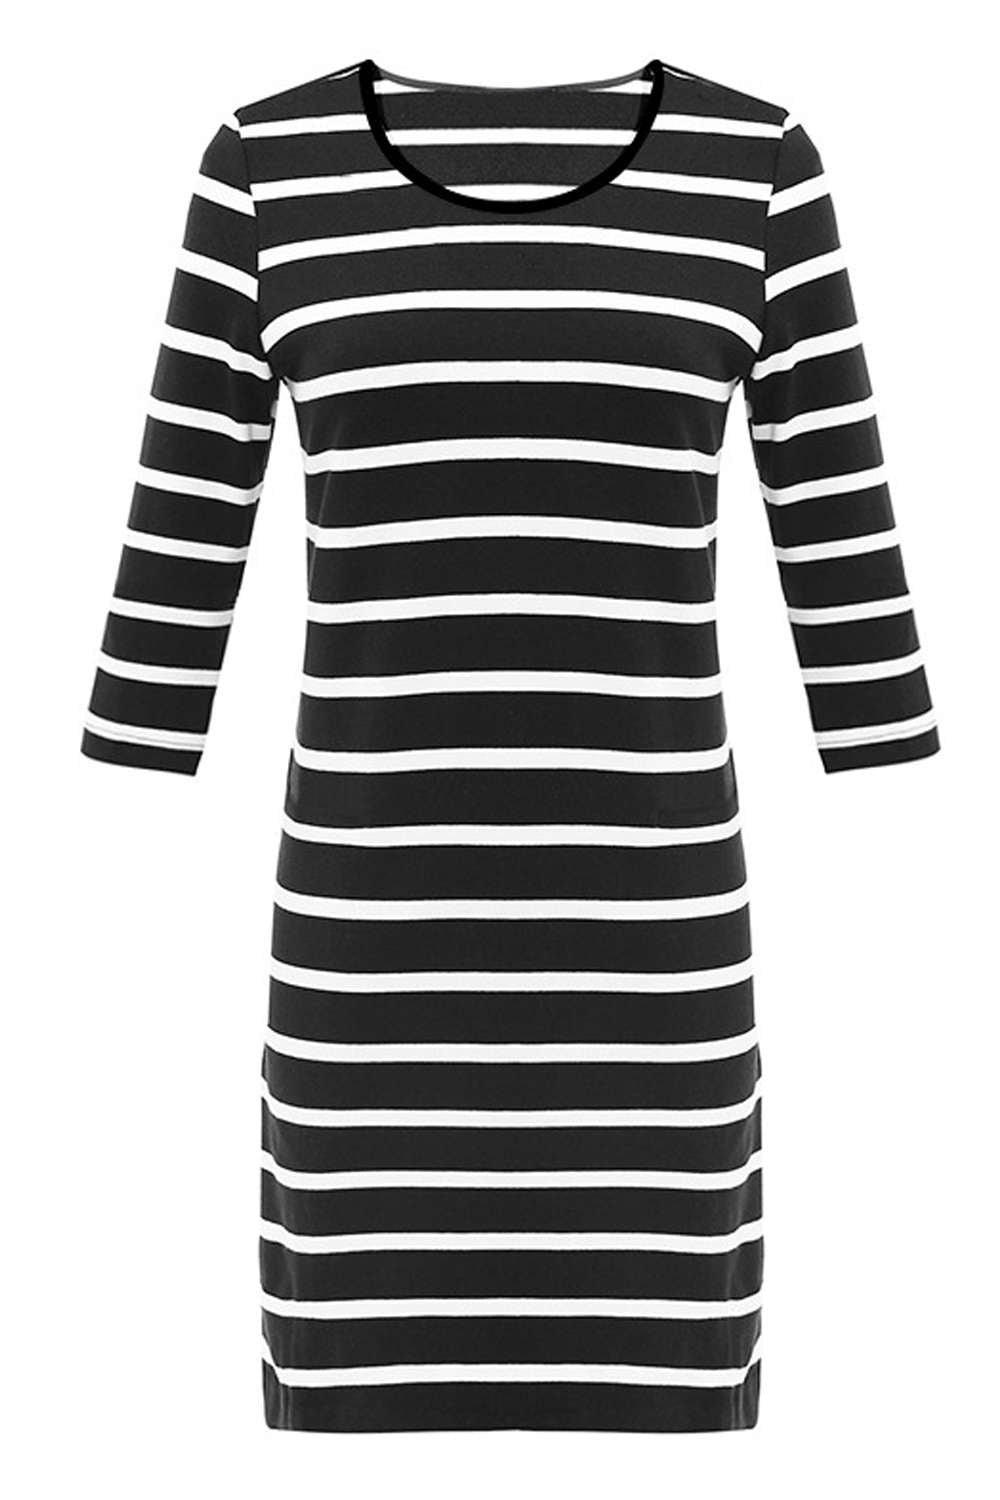 Iyasson Women's Striped Bodycon Dress